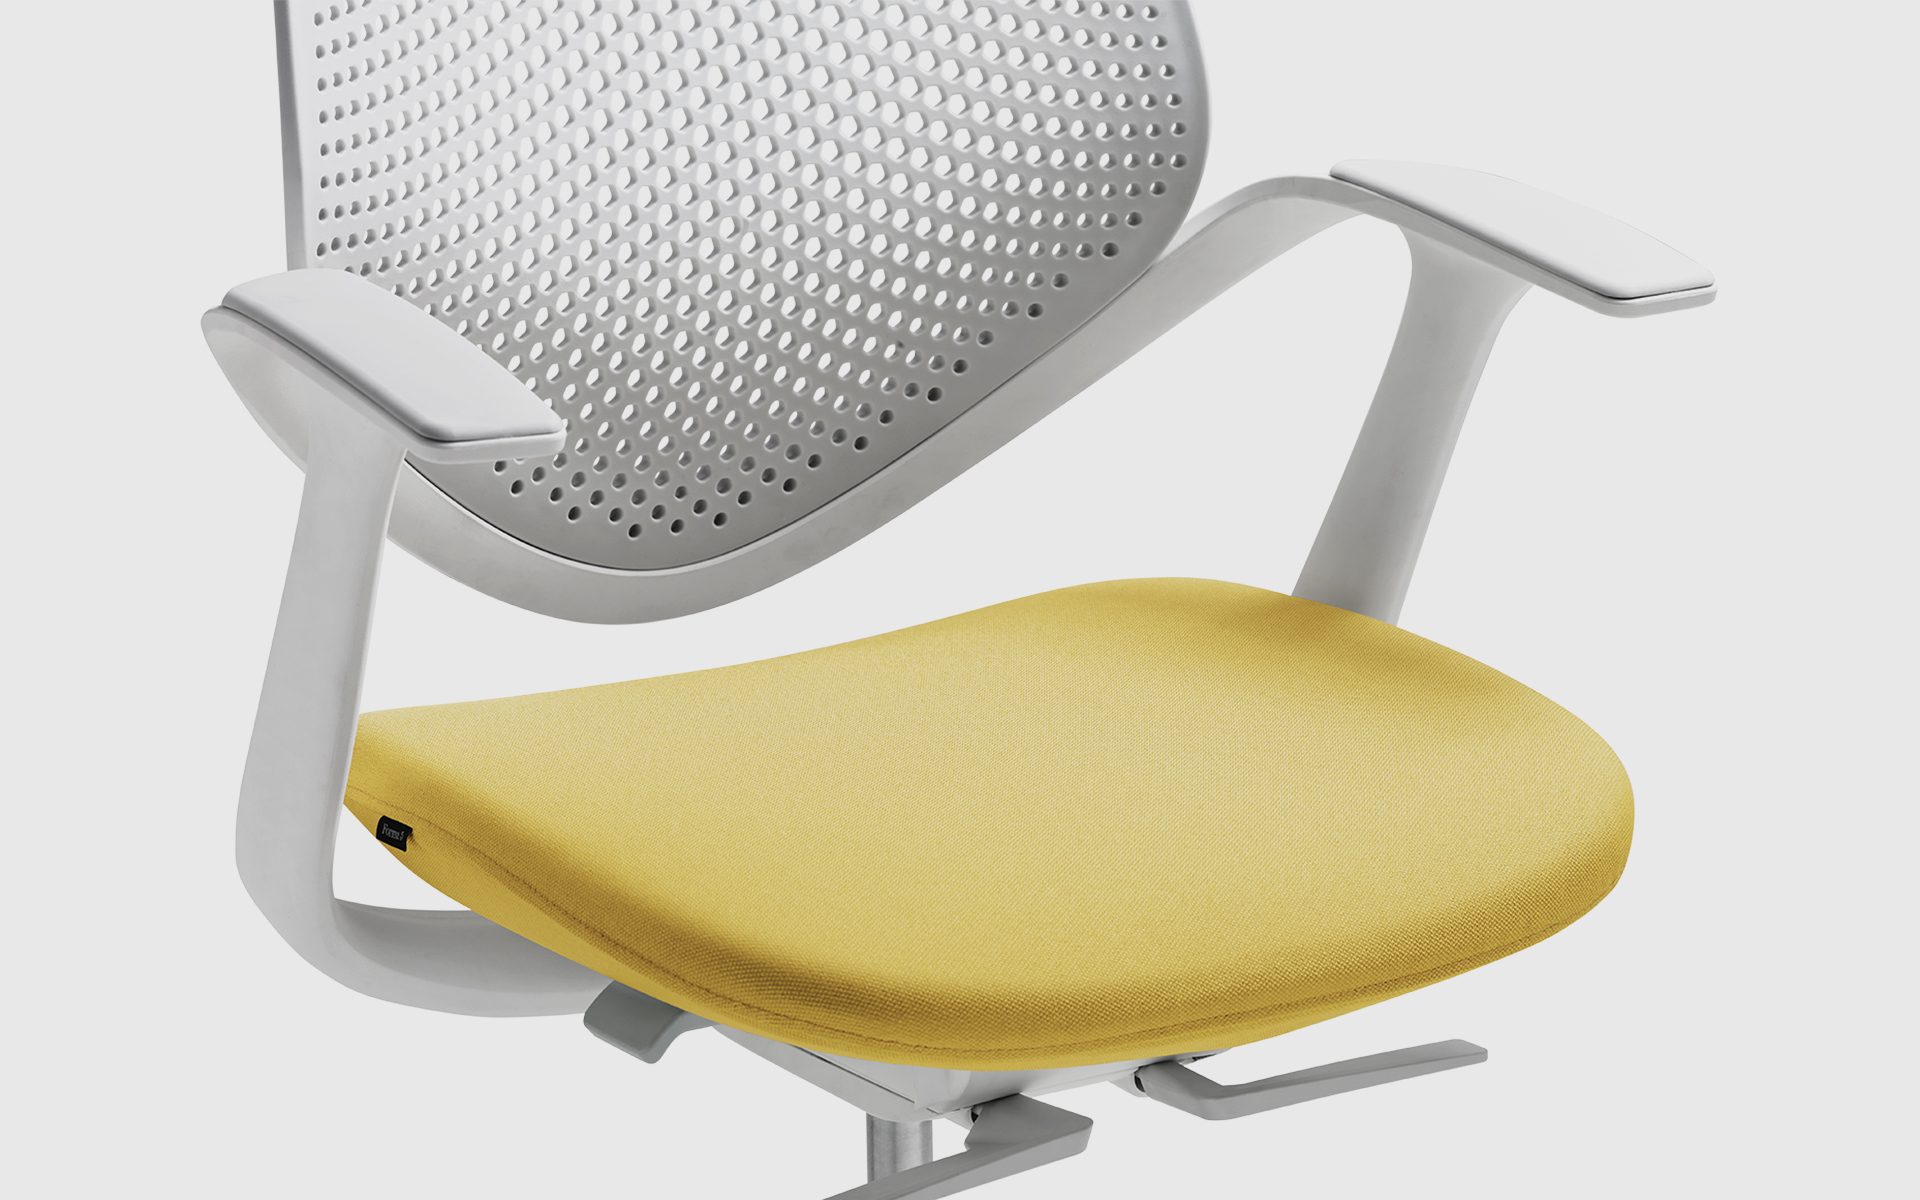 Vergrößerte Teilansicht von vorne eines Forma 5 Flow Bürostuhls von ITO Design mit gepolsterter Sitzfläche in Gelb, Rücken- und Armlehnen in Weiss.